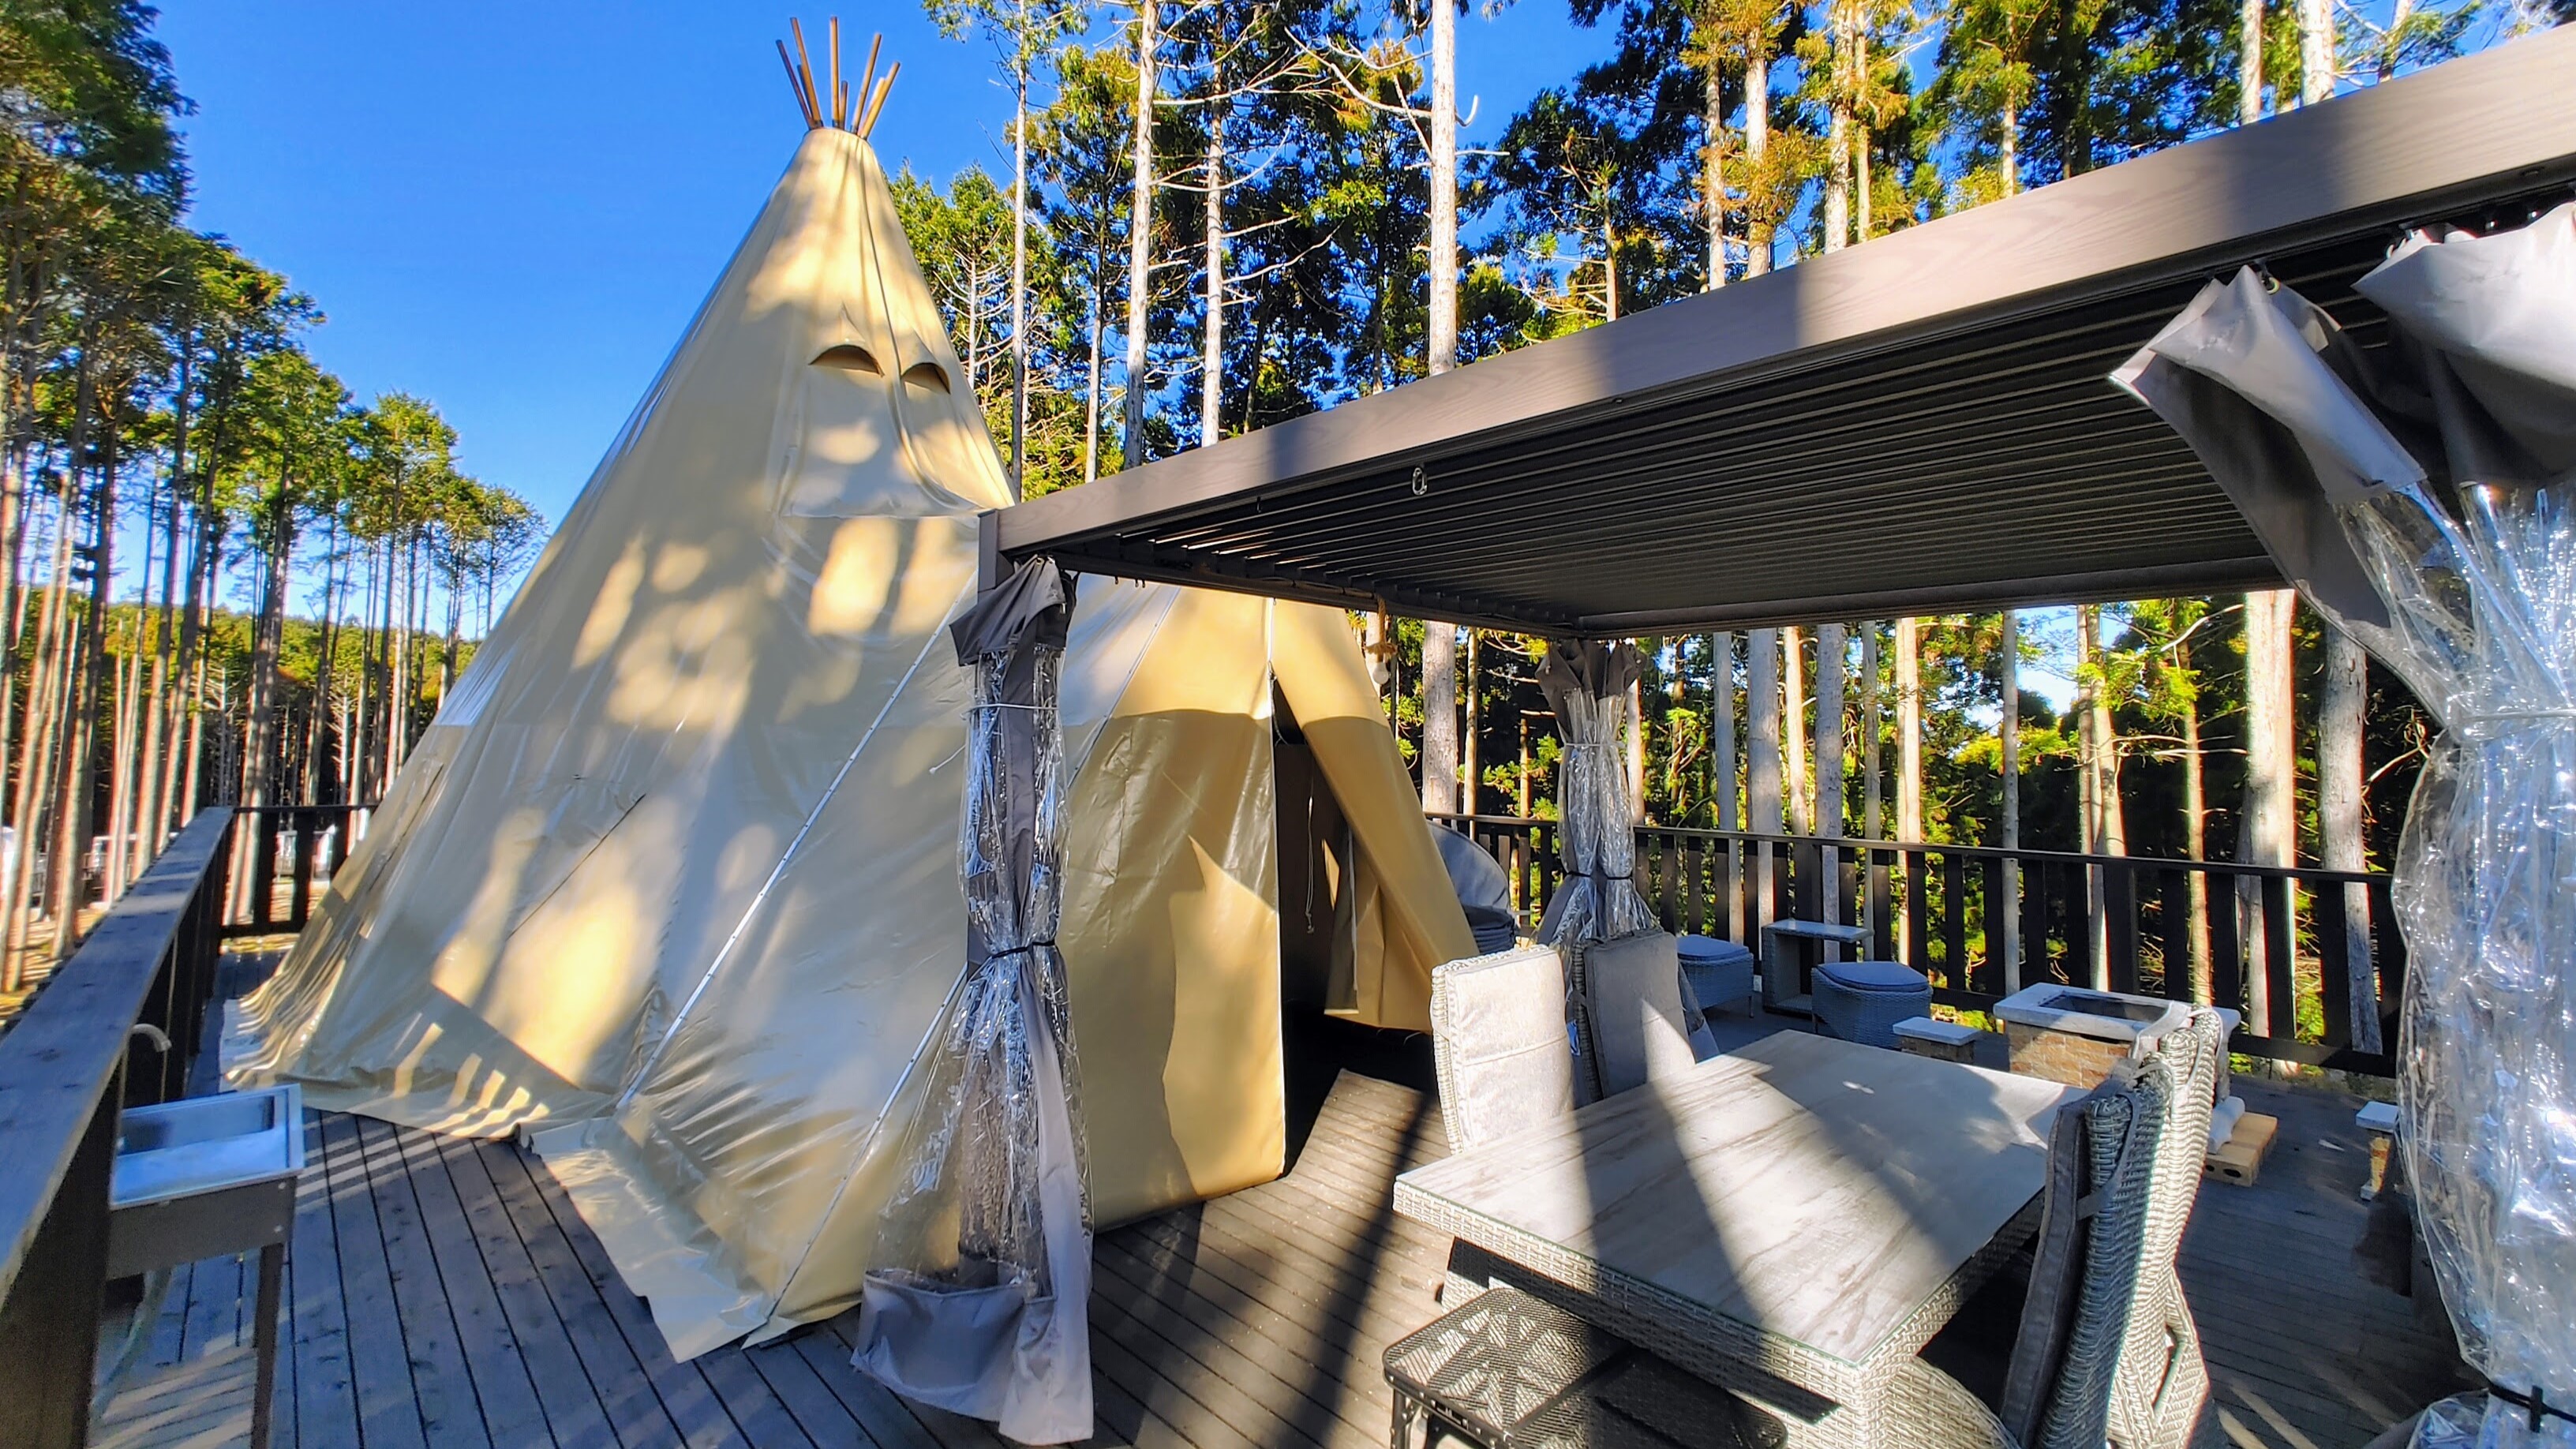 インディアン風ティピーテントは独特な形。高さは6mもある背の高いテントです（2階はありません）